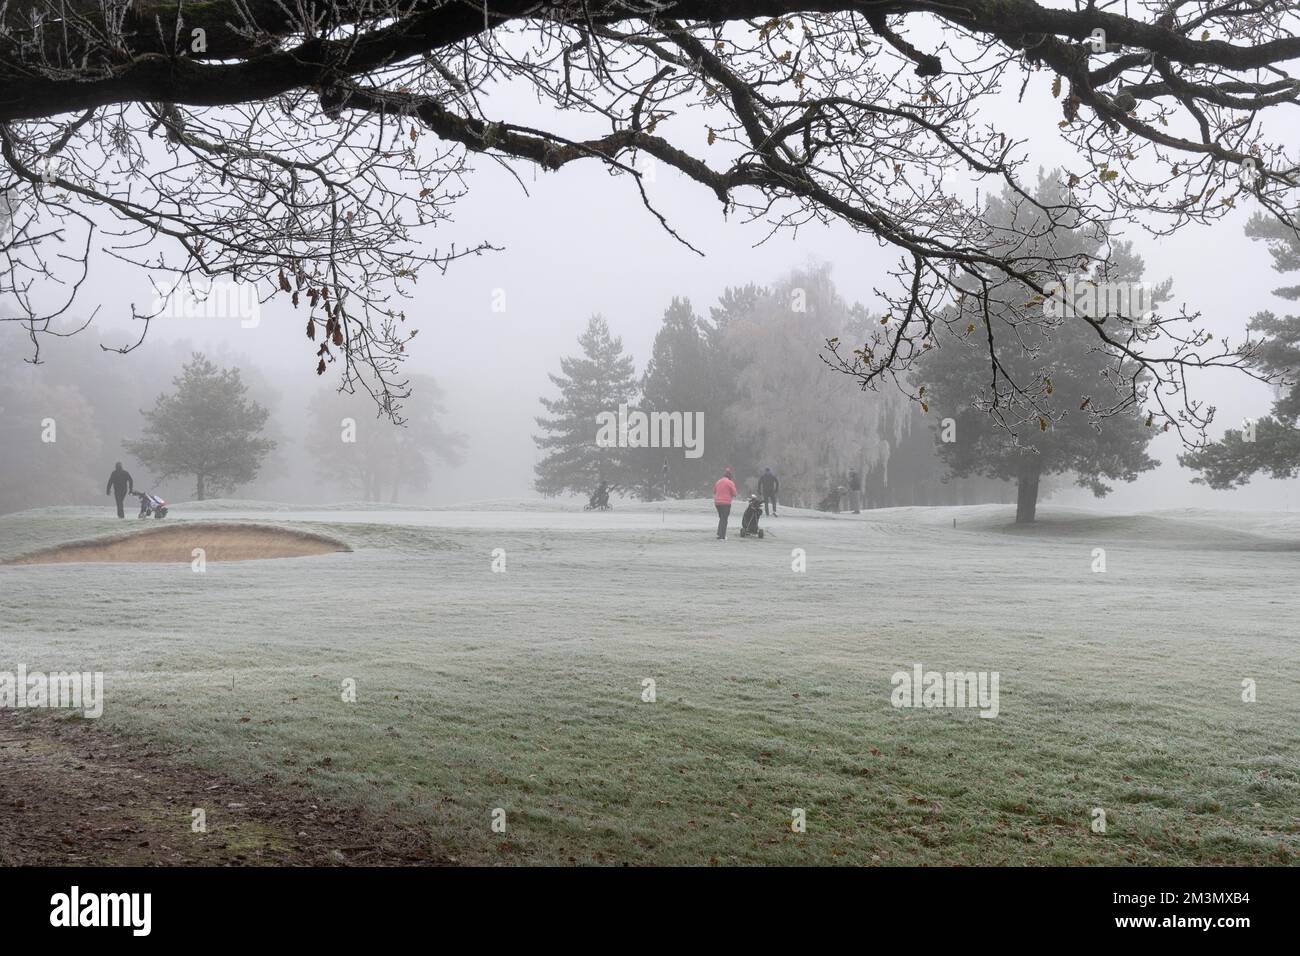 Les gens qui jouent au golf lors d'une journée froide d'hiver avec du brouillard glacial, Surrey, Angleterre, Royaume-Uni Banque D'Images